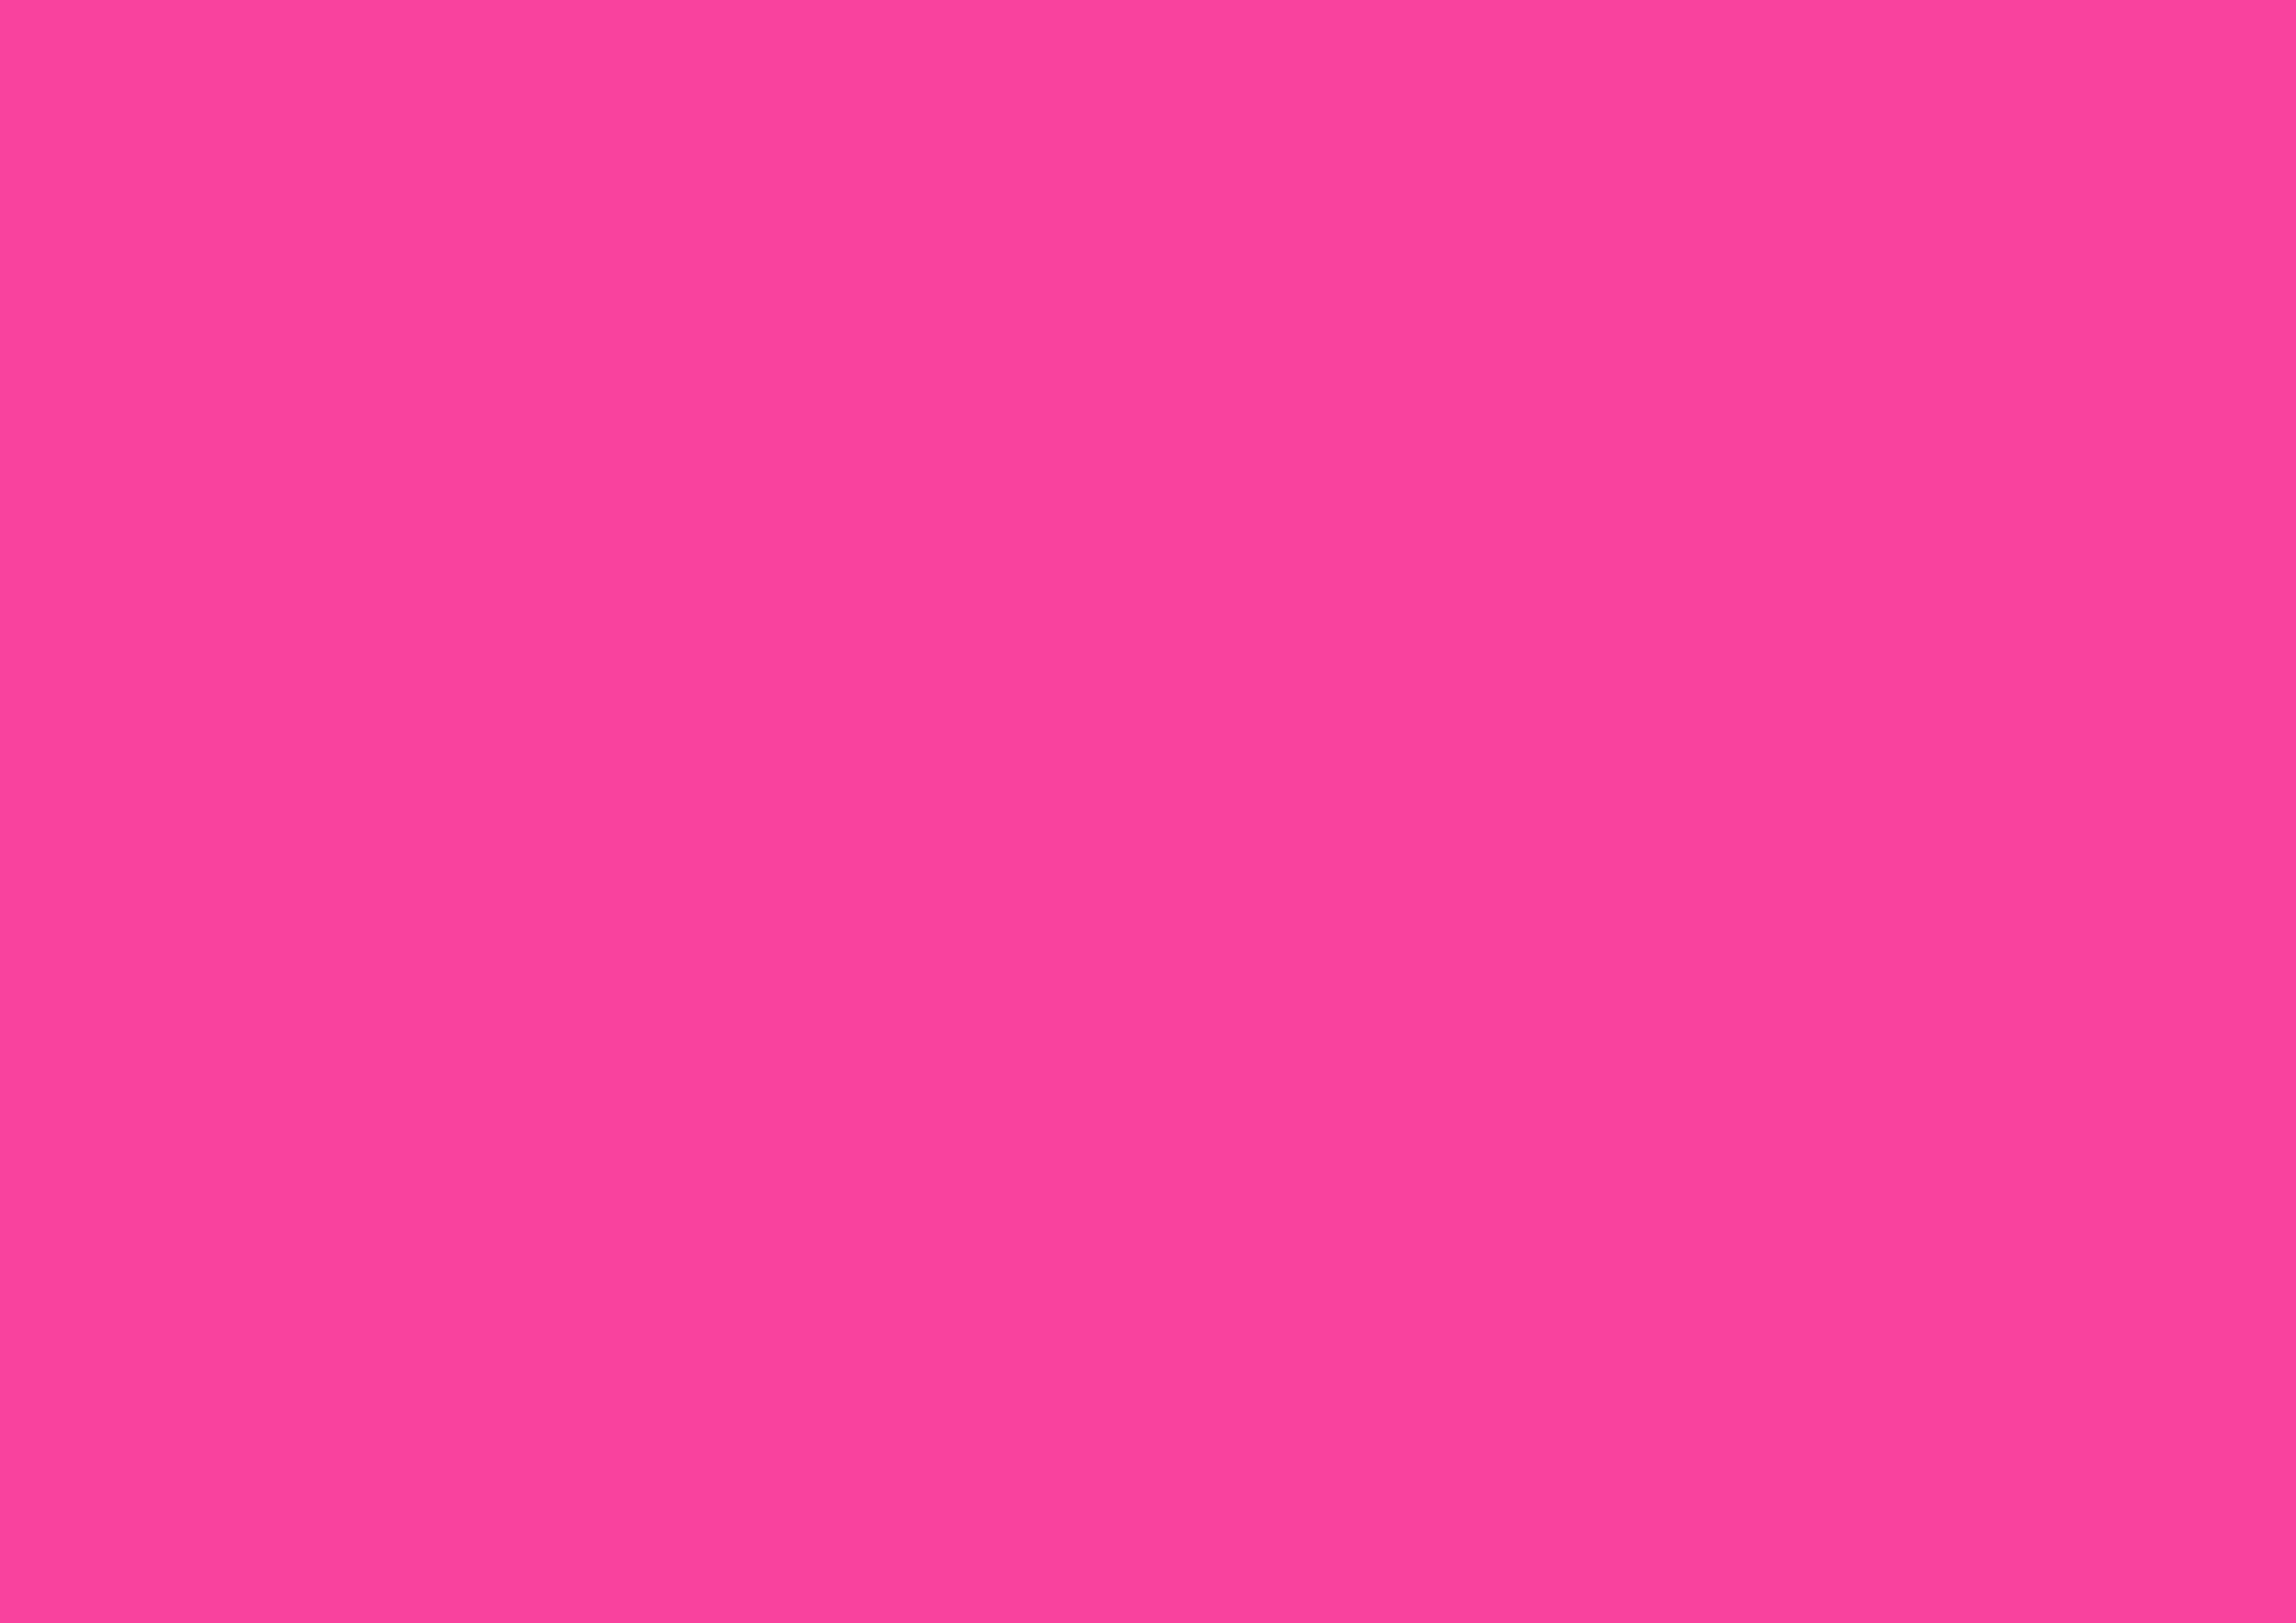 3508x2480 Rose Bonbon Solid Color Background